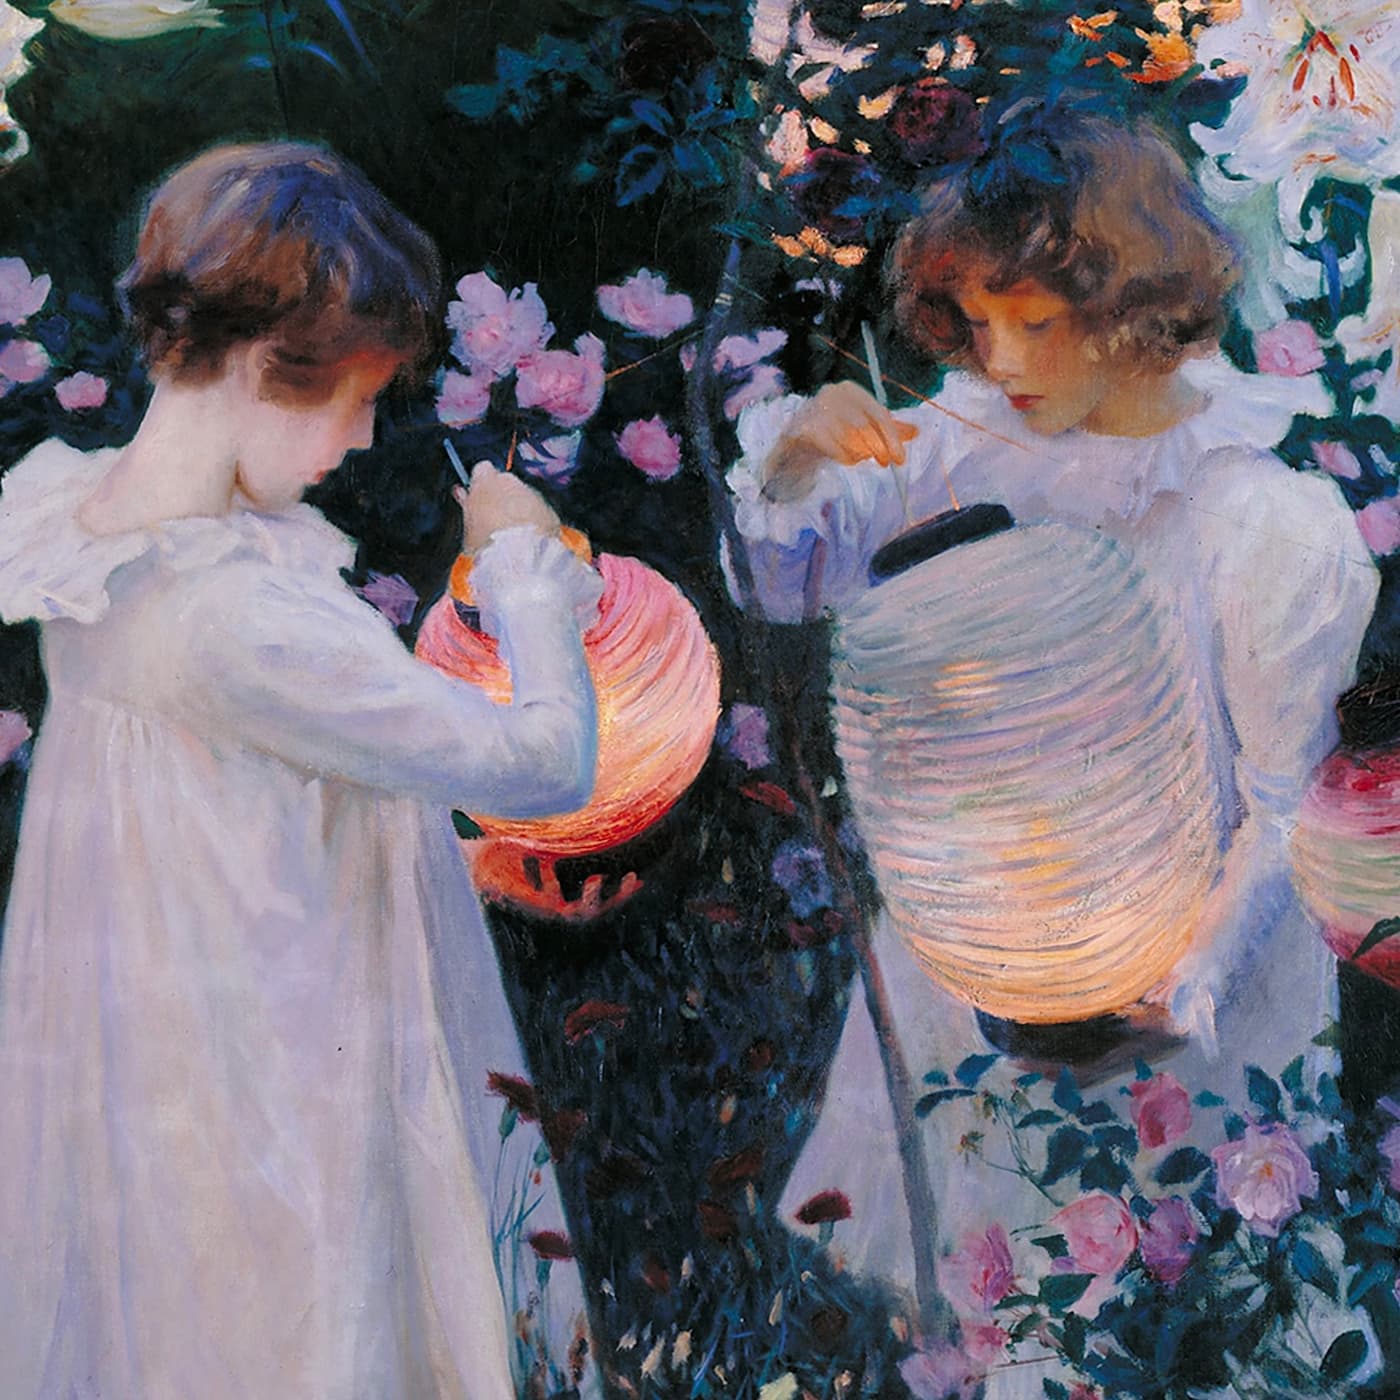 Гвоздика, лилия, лилия, роза (Джон Сингер Сарджент), фрагмент с девочками